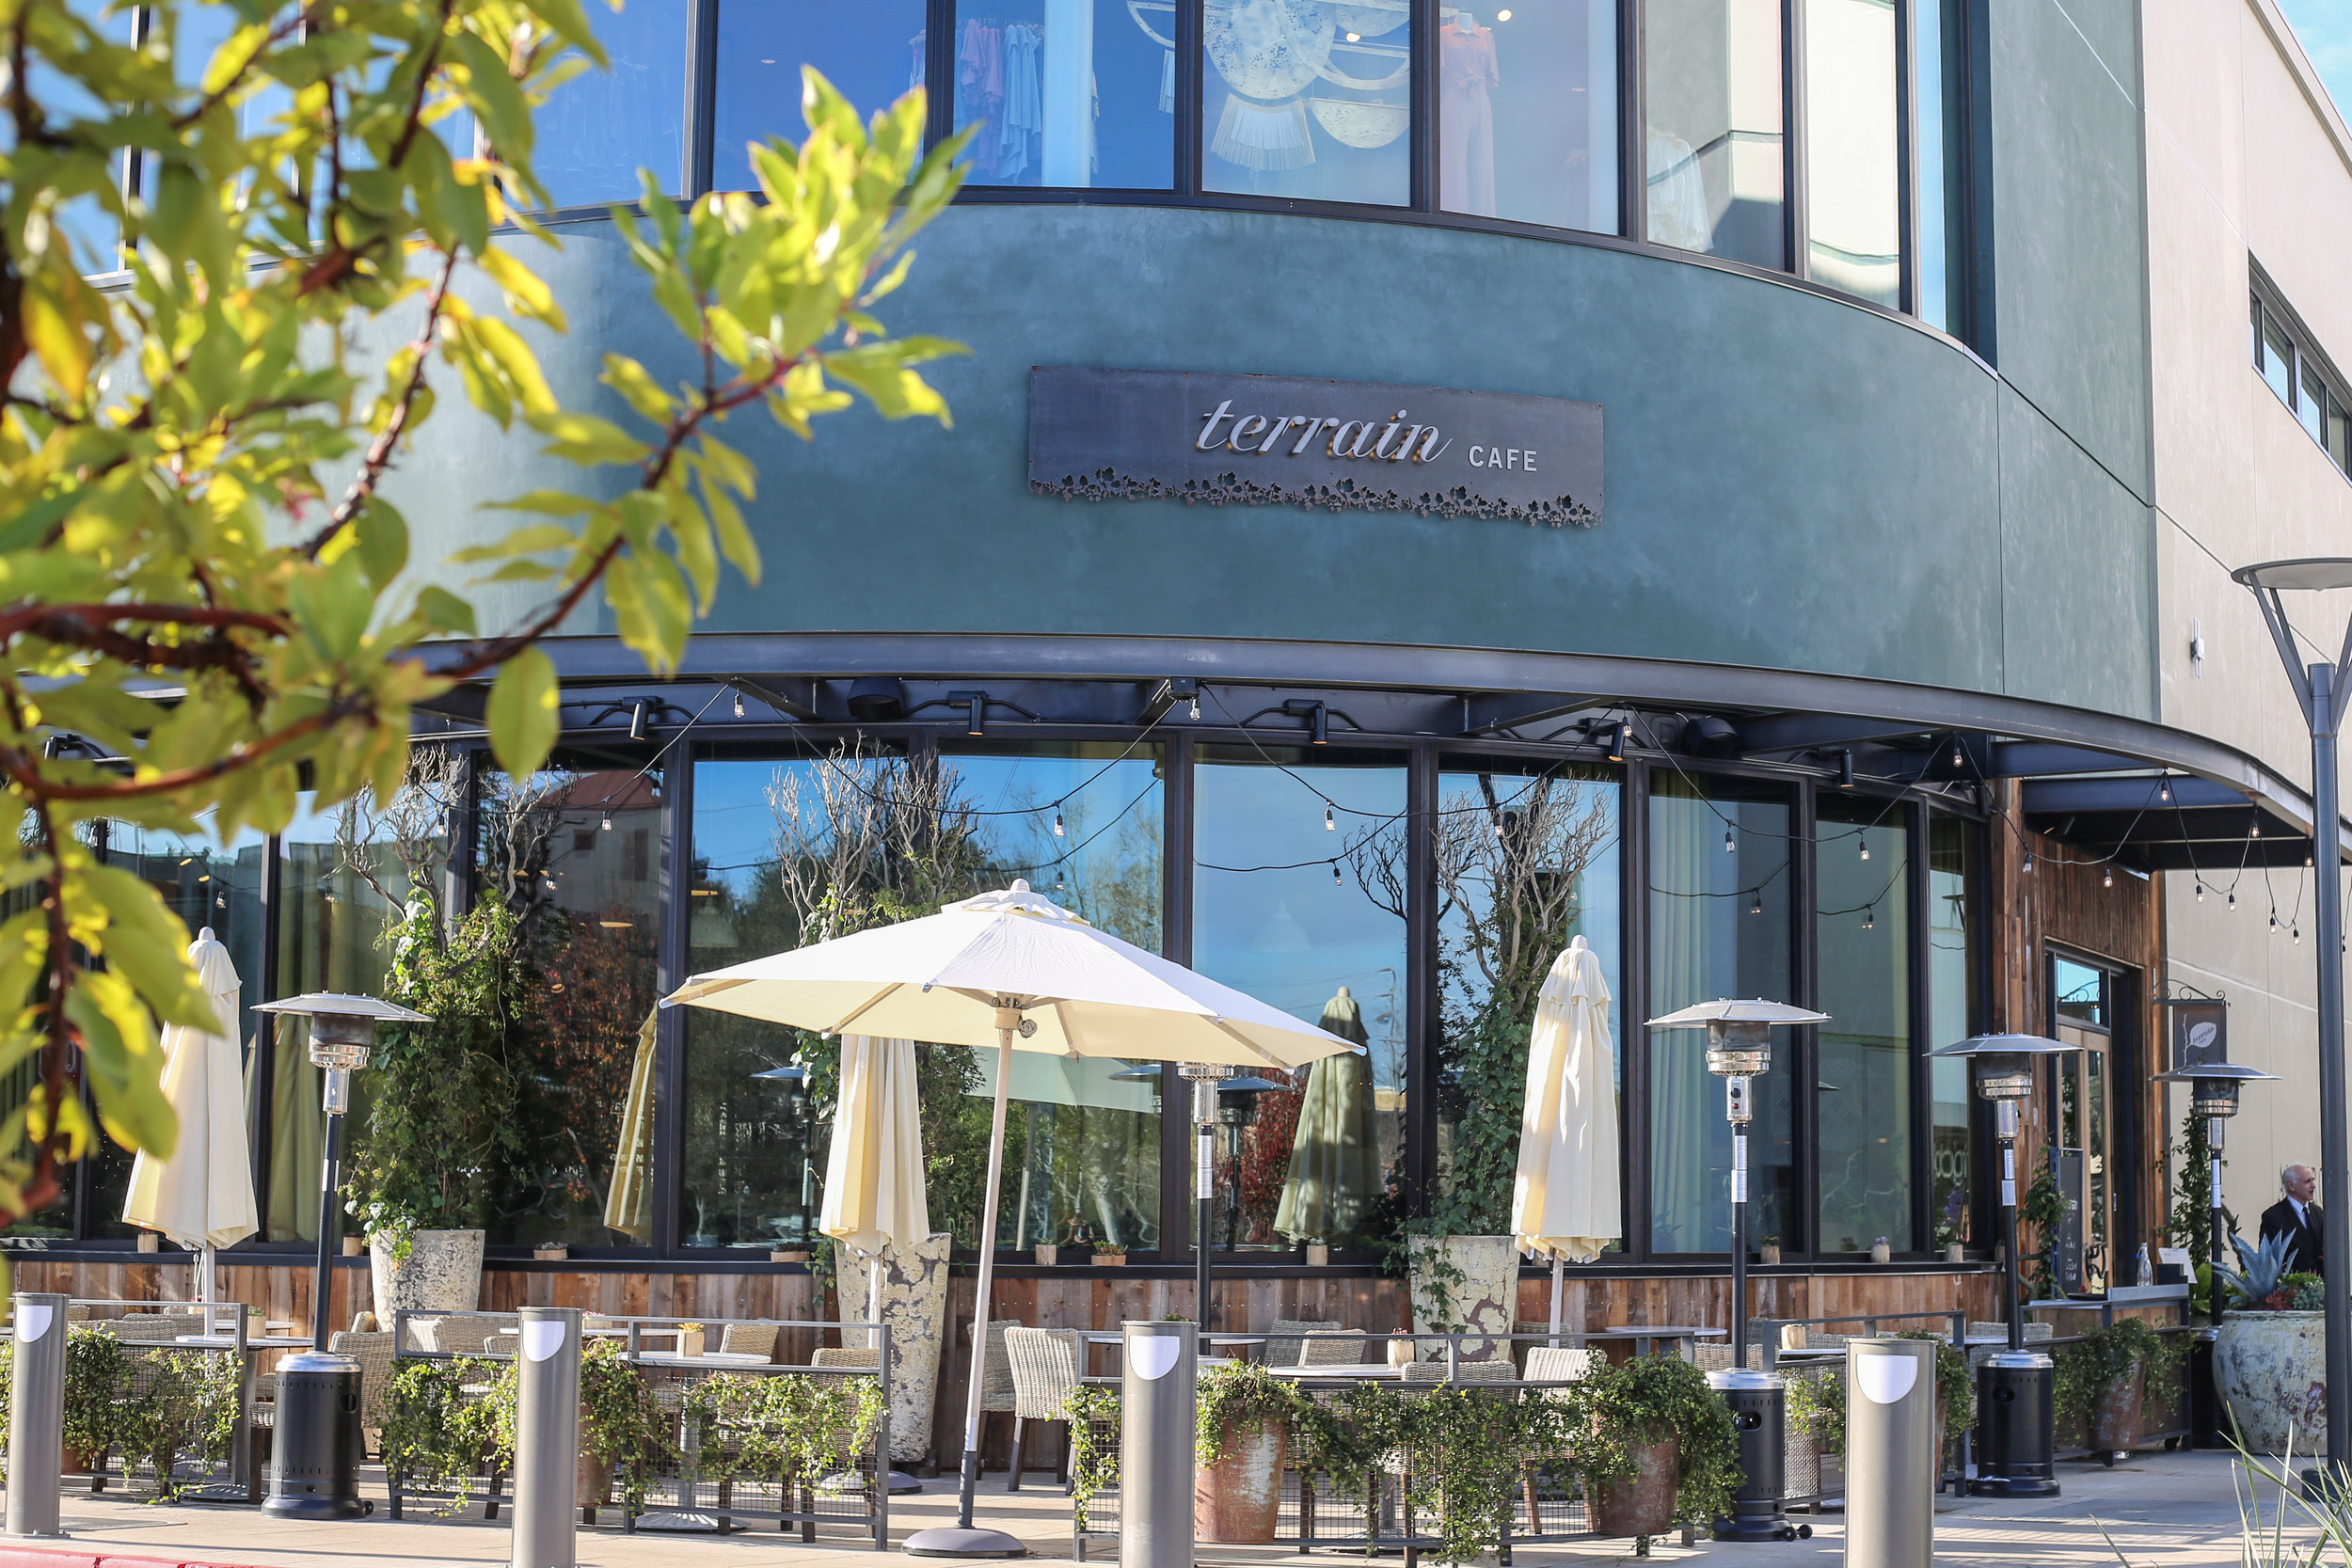 Local Eats Terrain Garden Cafe In Palo Alto Frame 2 Table